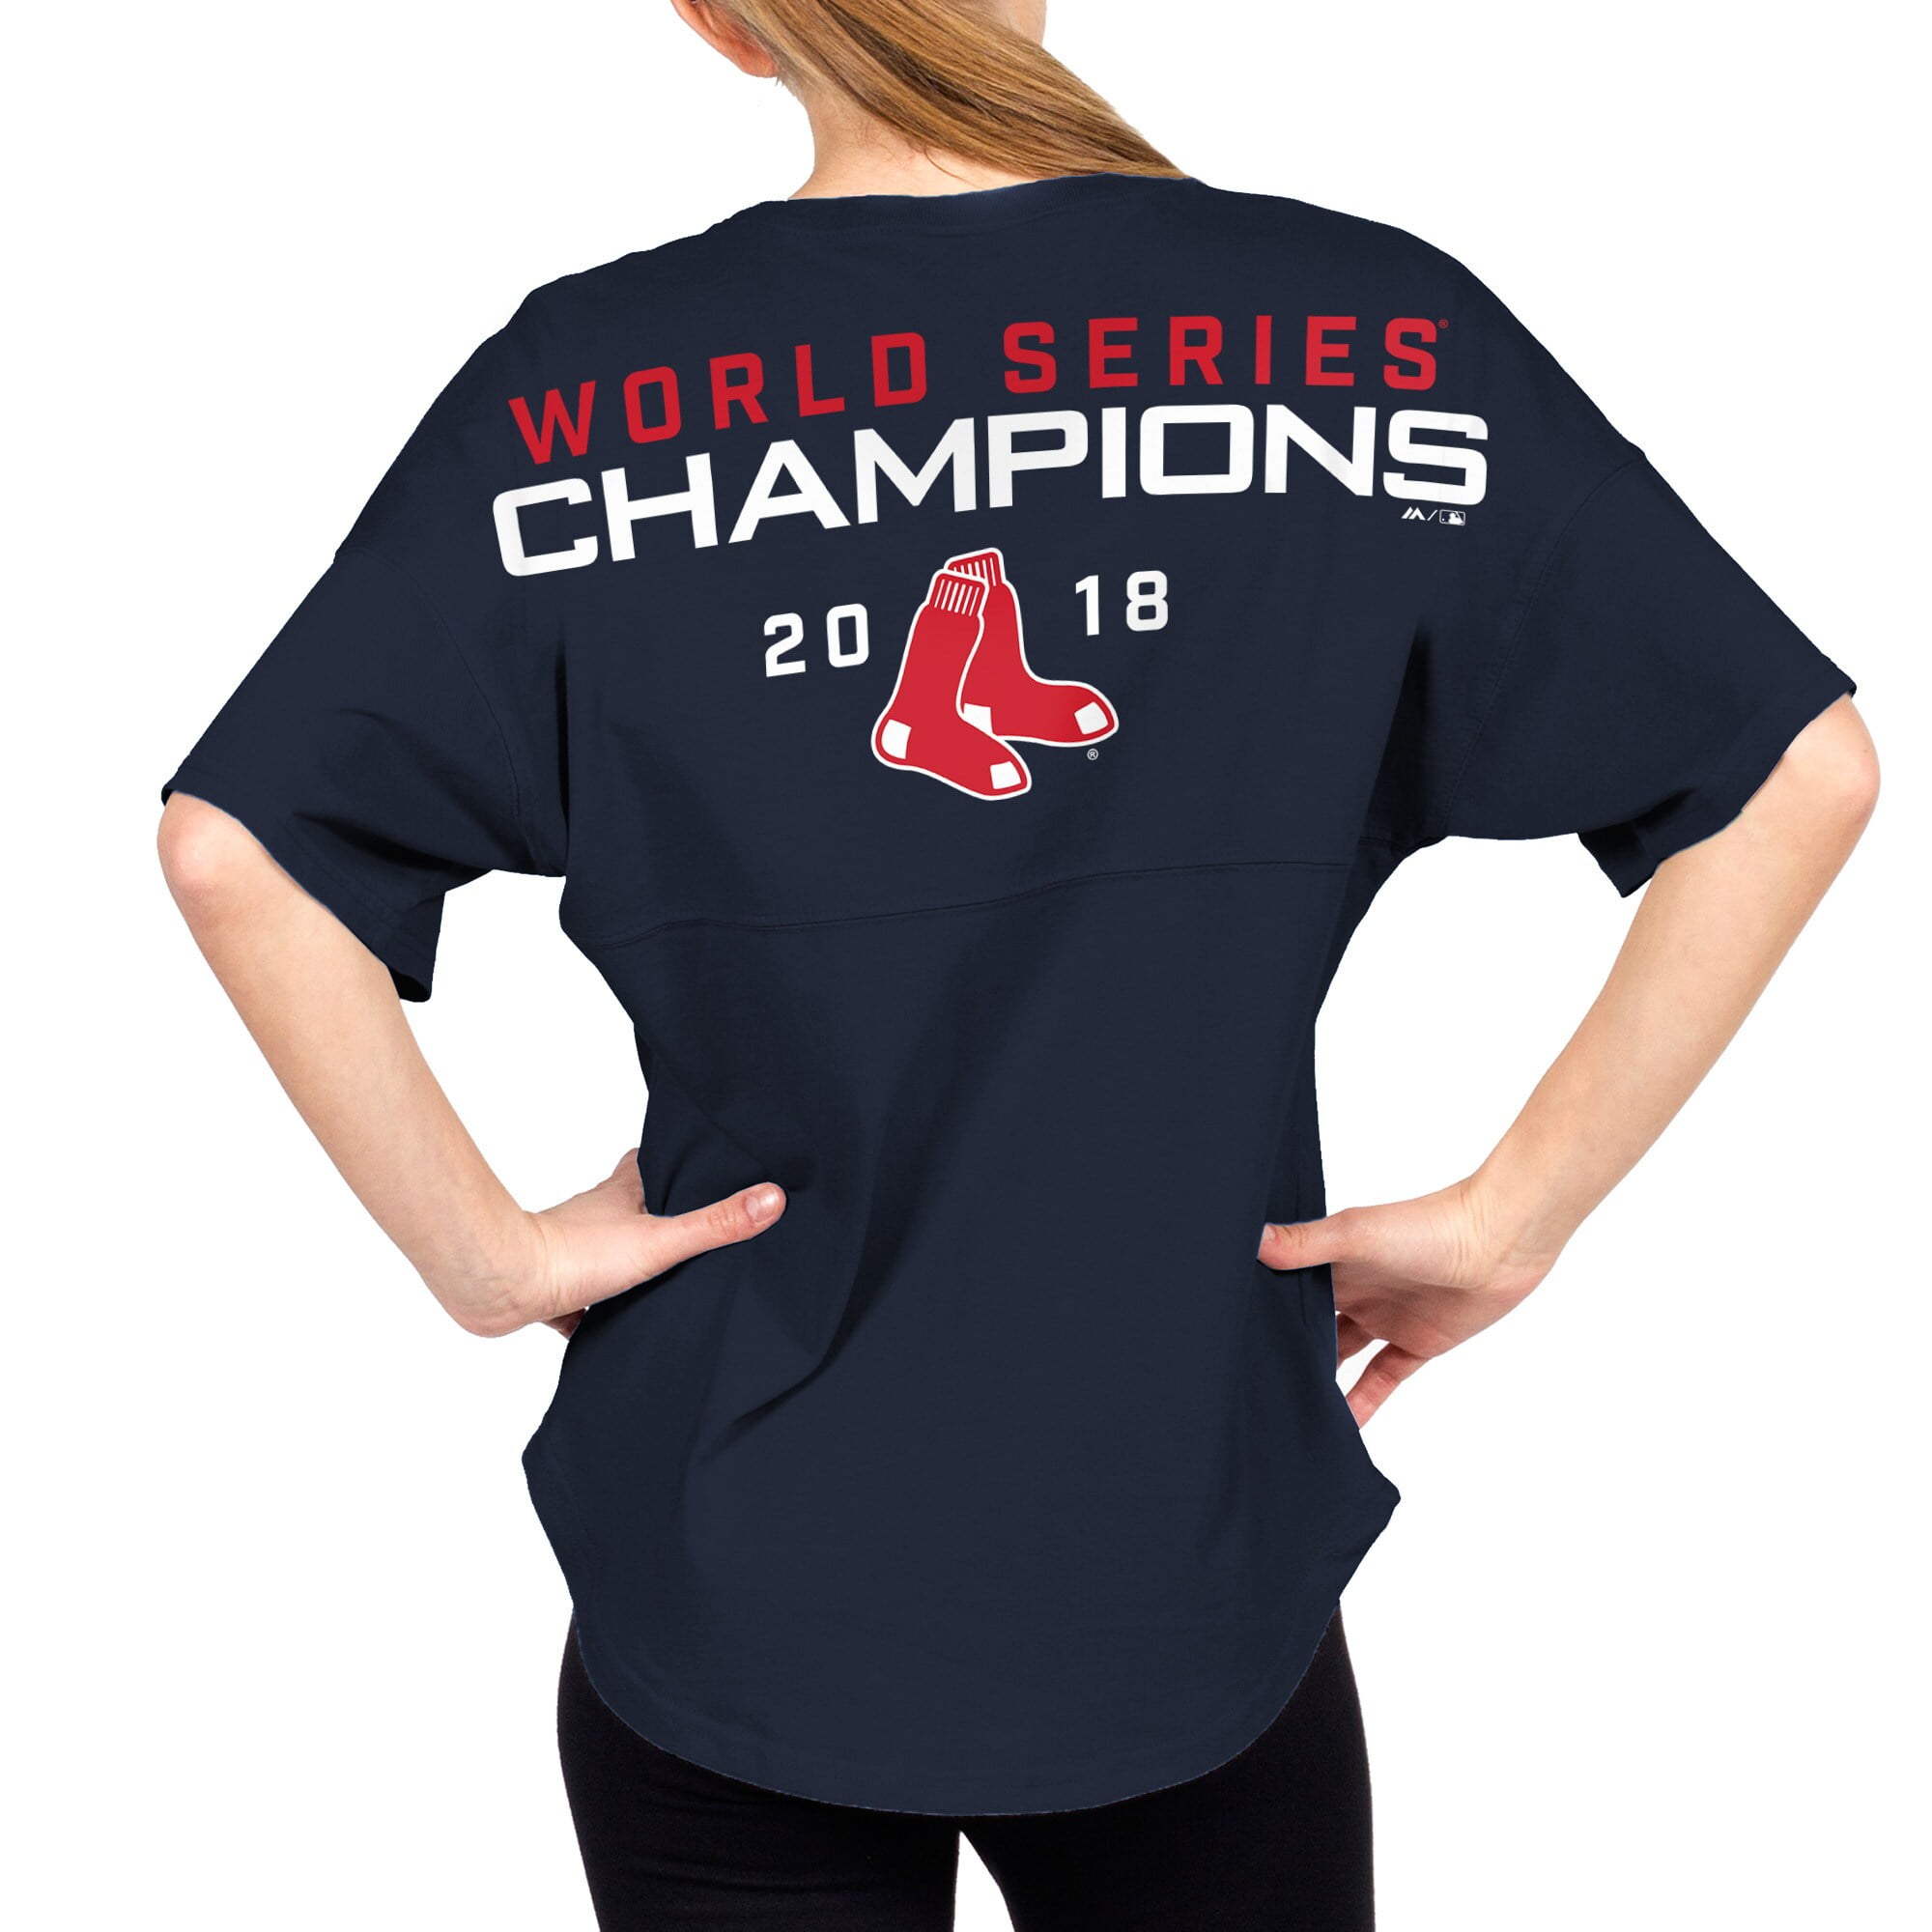 2018 world series champions shirts